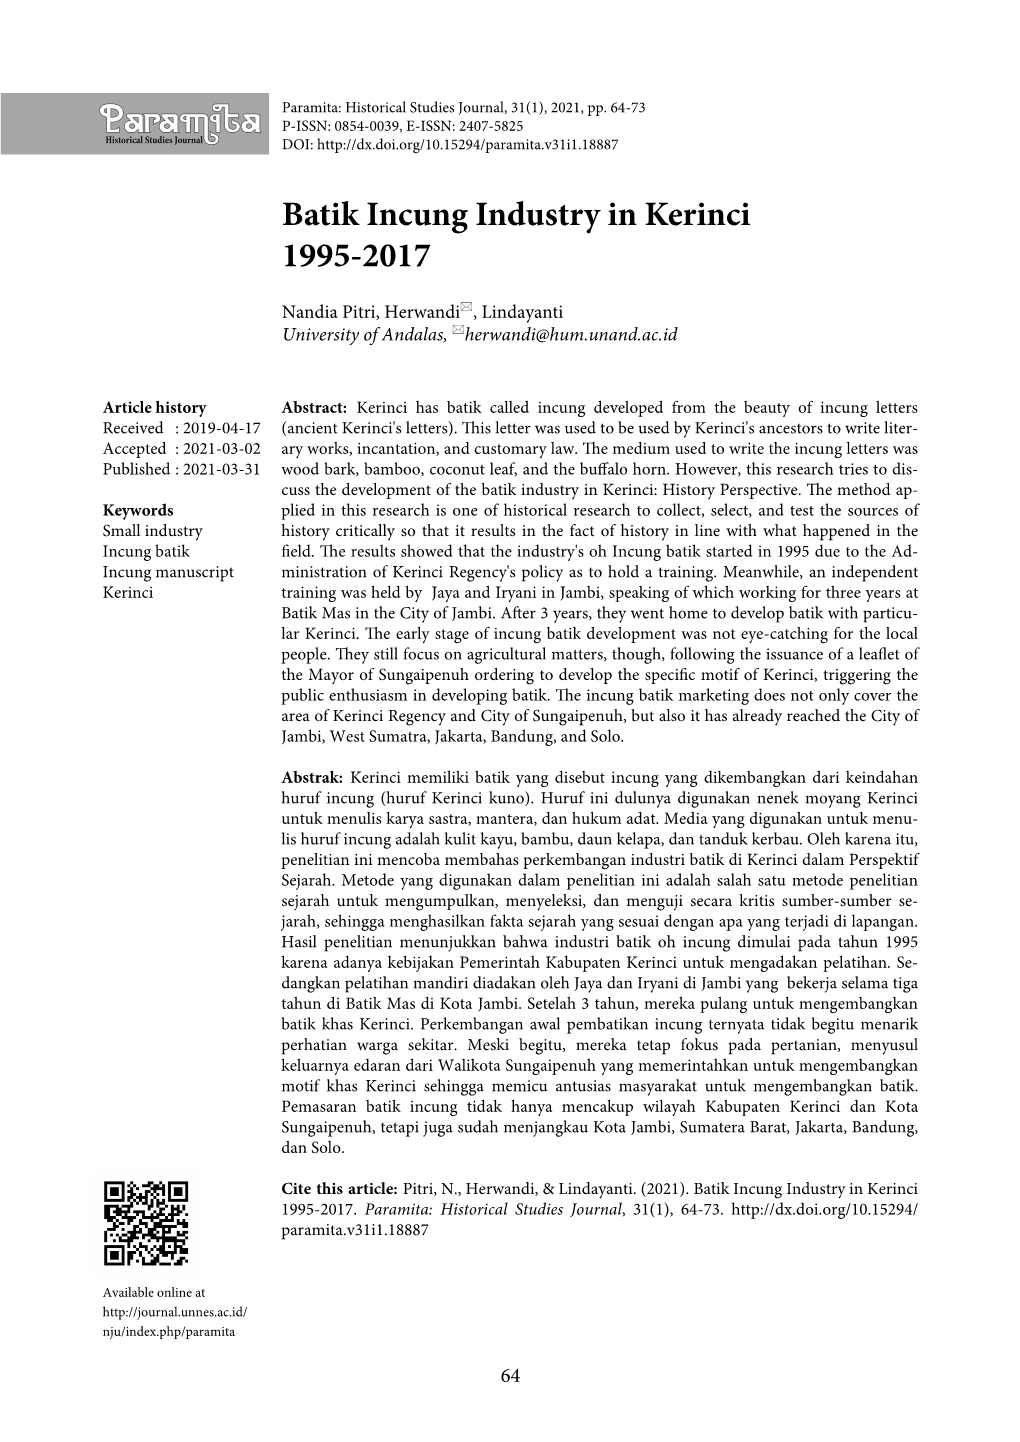 Batik Incung Industry in Kerinci 1995-2017